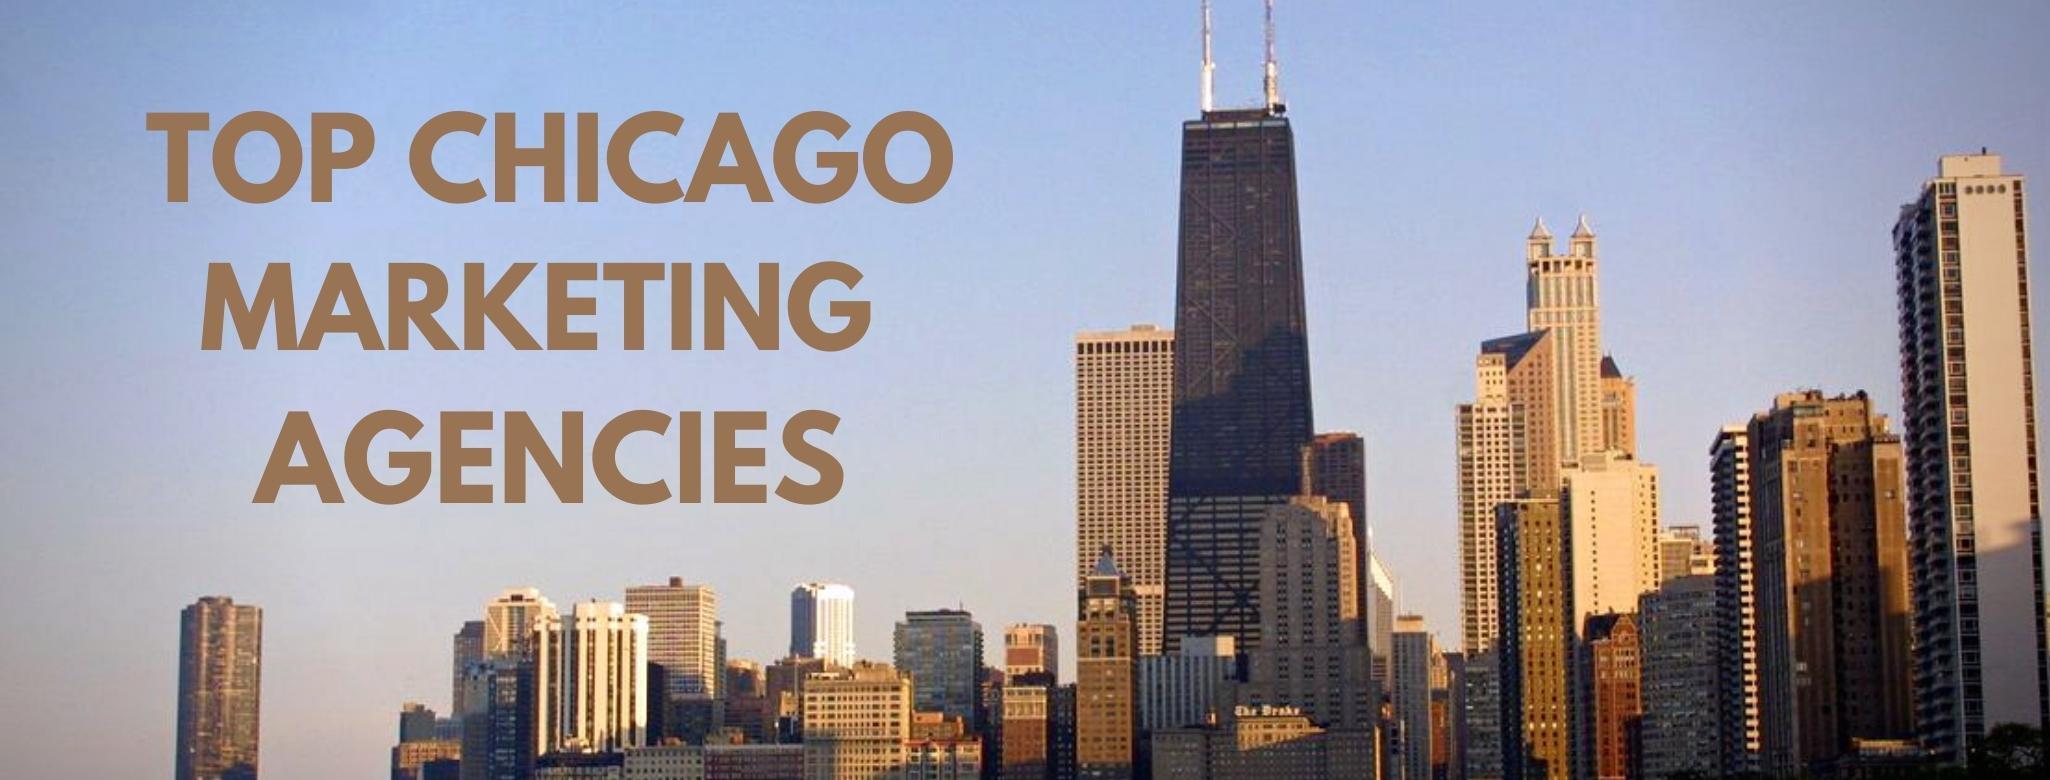 Chicago marketing agencies